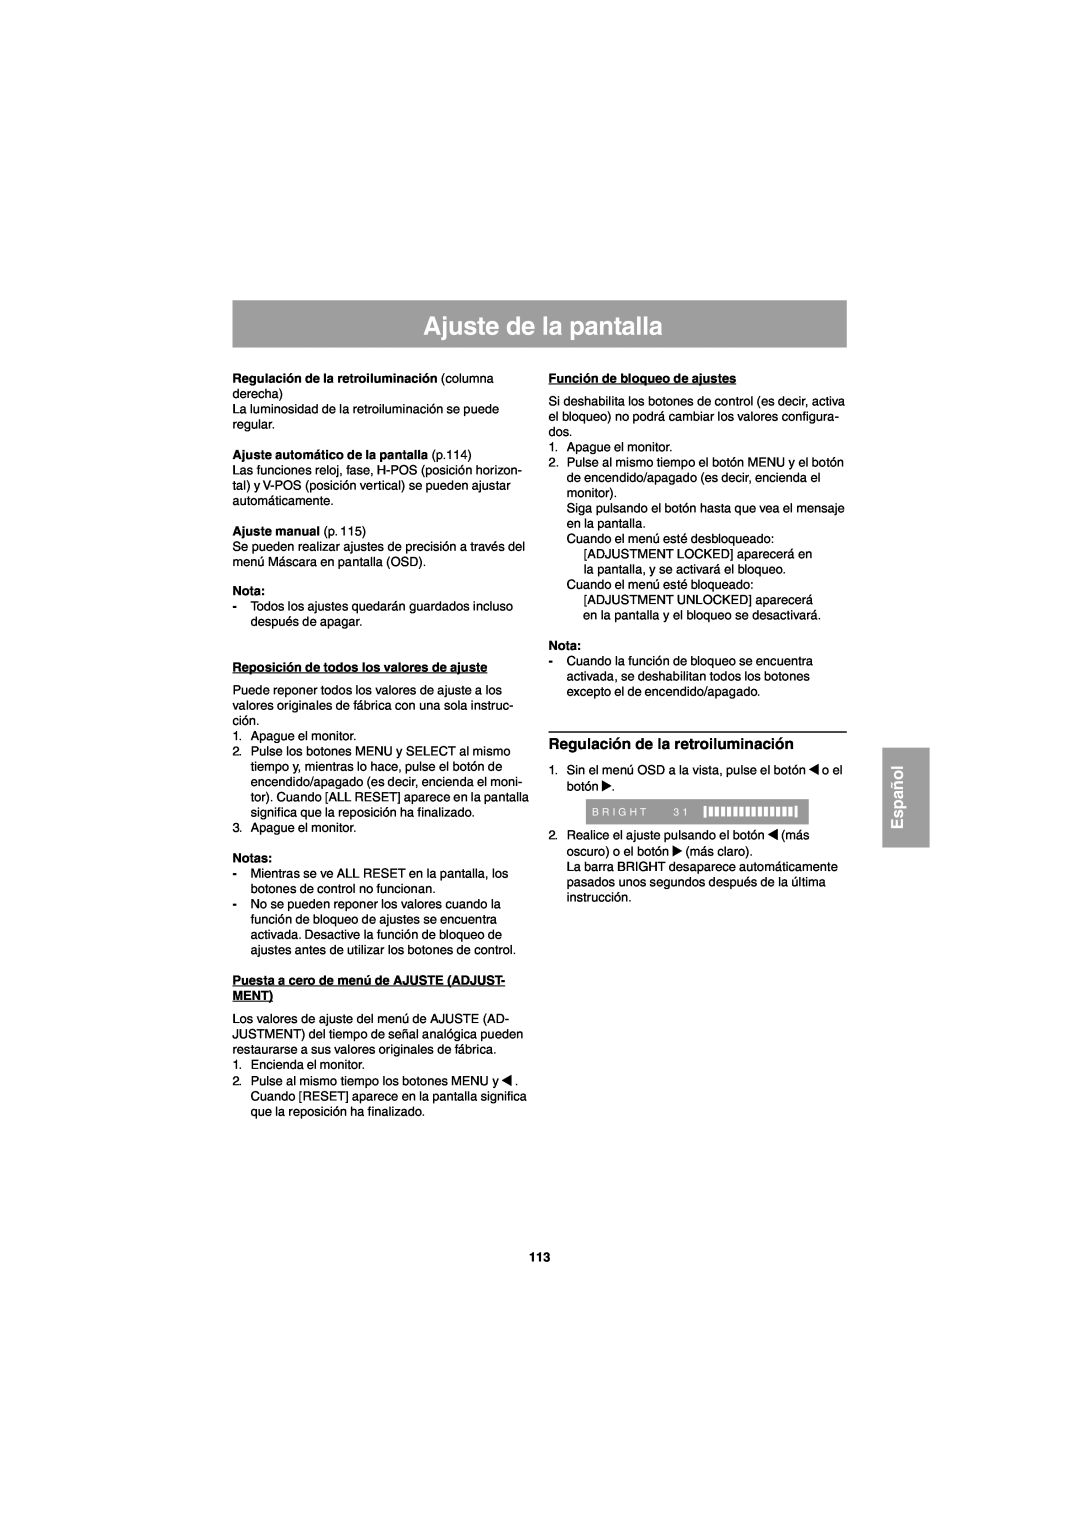 Sharp LL-E15G1 Ajuste de la pantalla, Regulación de la retroiluminación columna derecha, Ajuste manual p, Español 